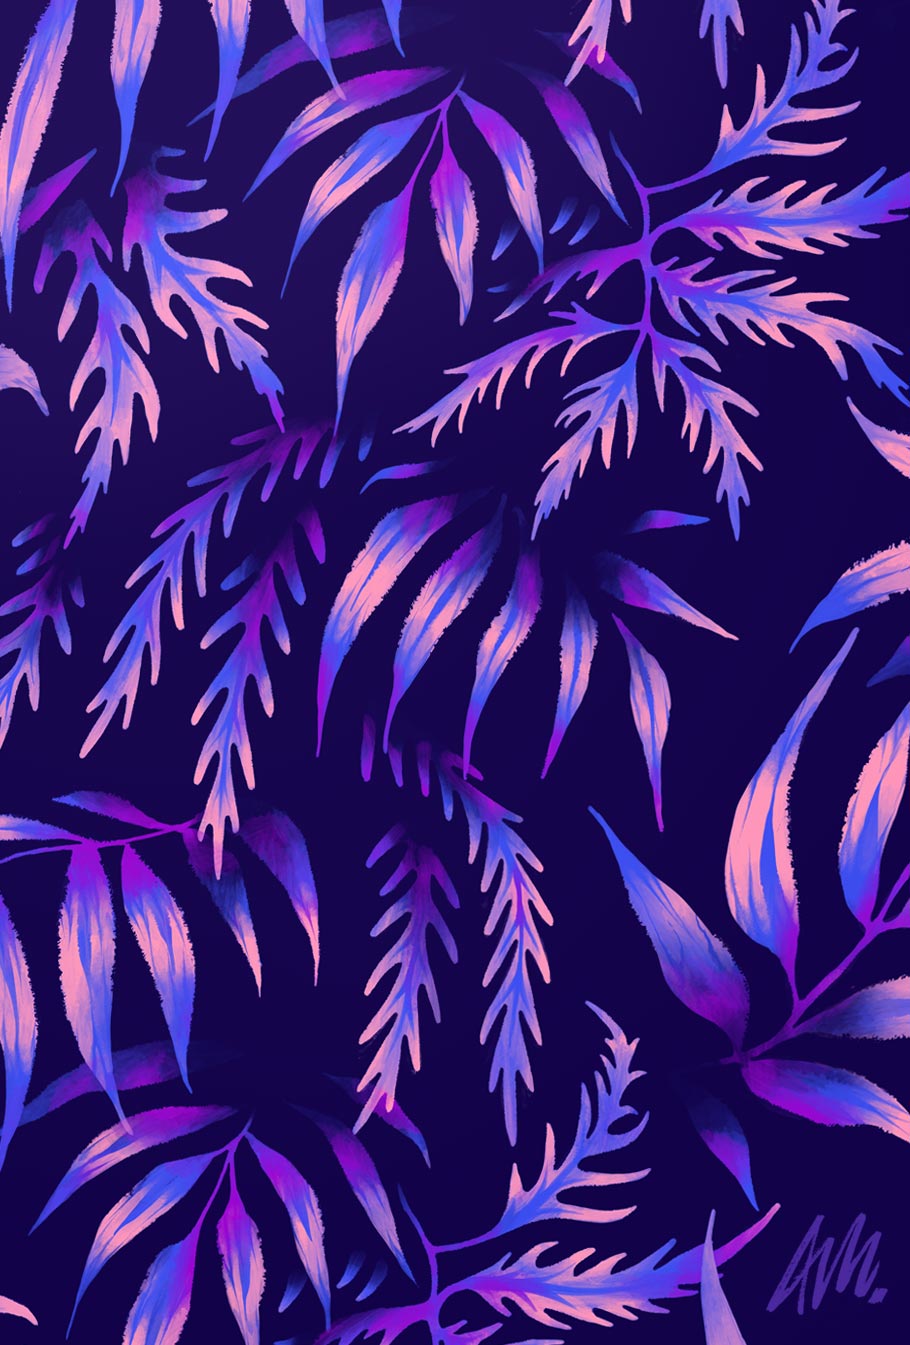 Fern leaf print pattern purple by Andrea Muller